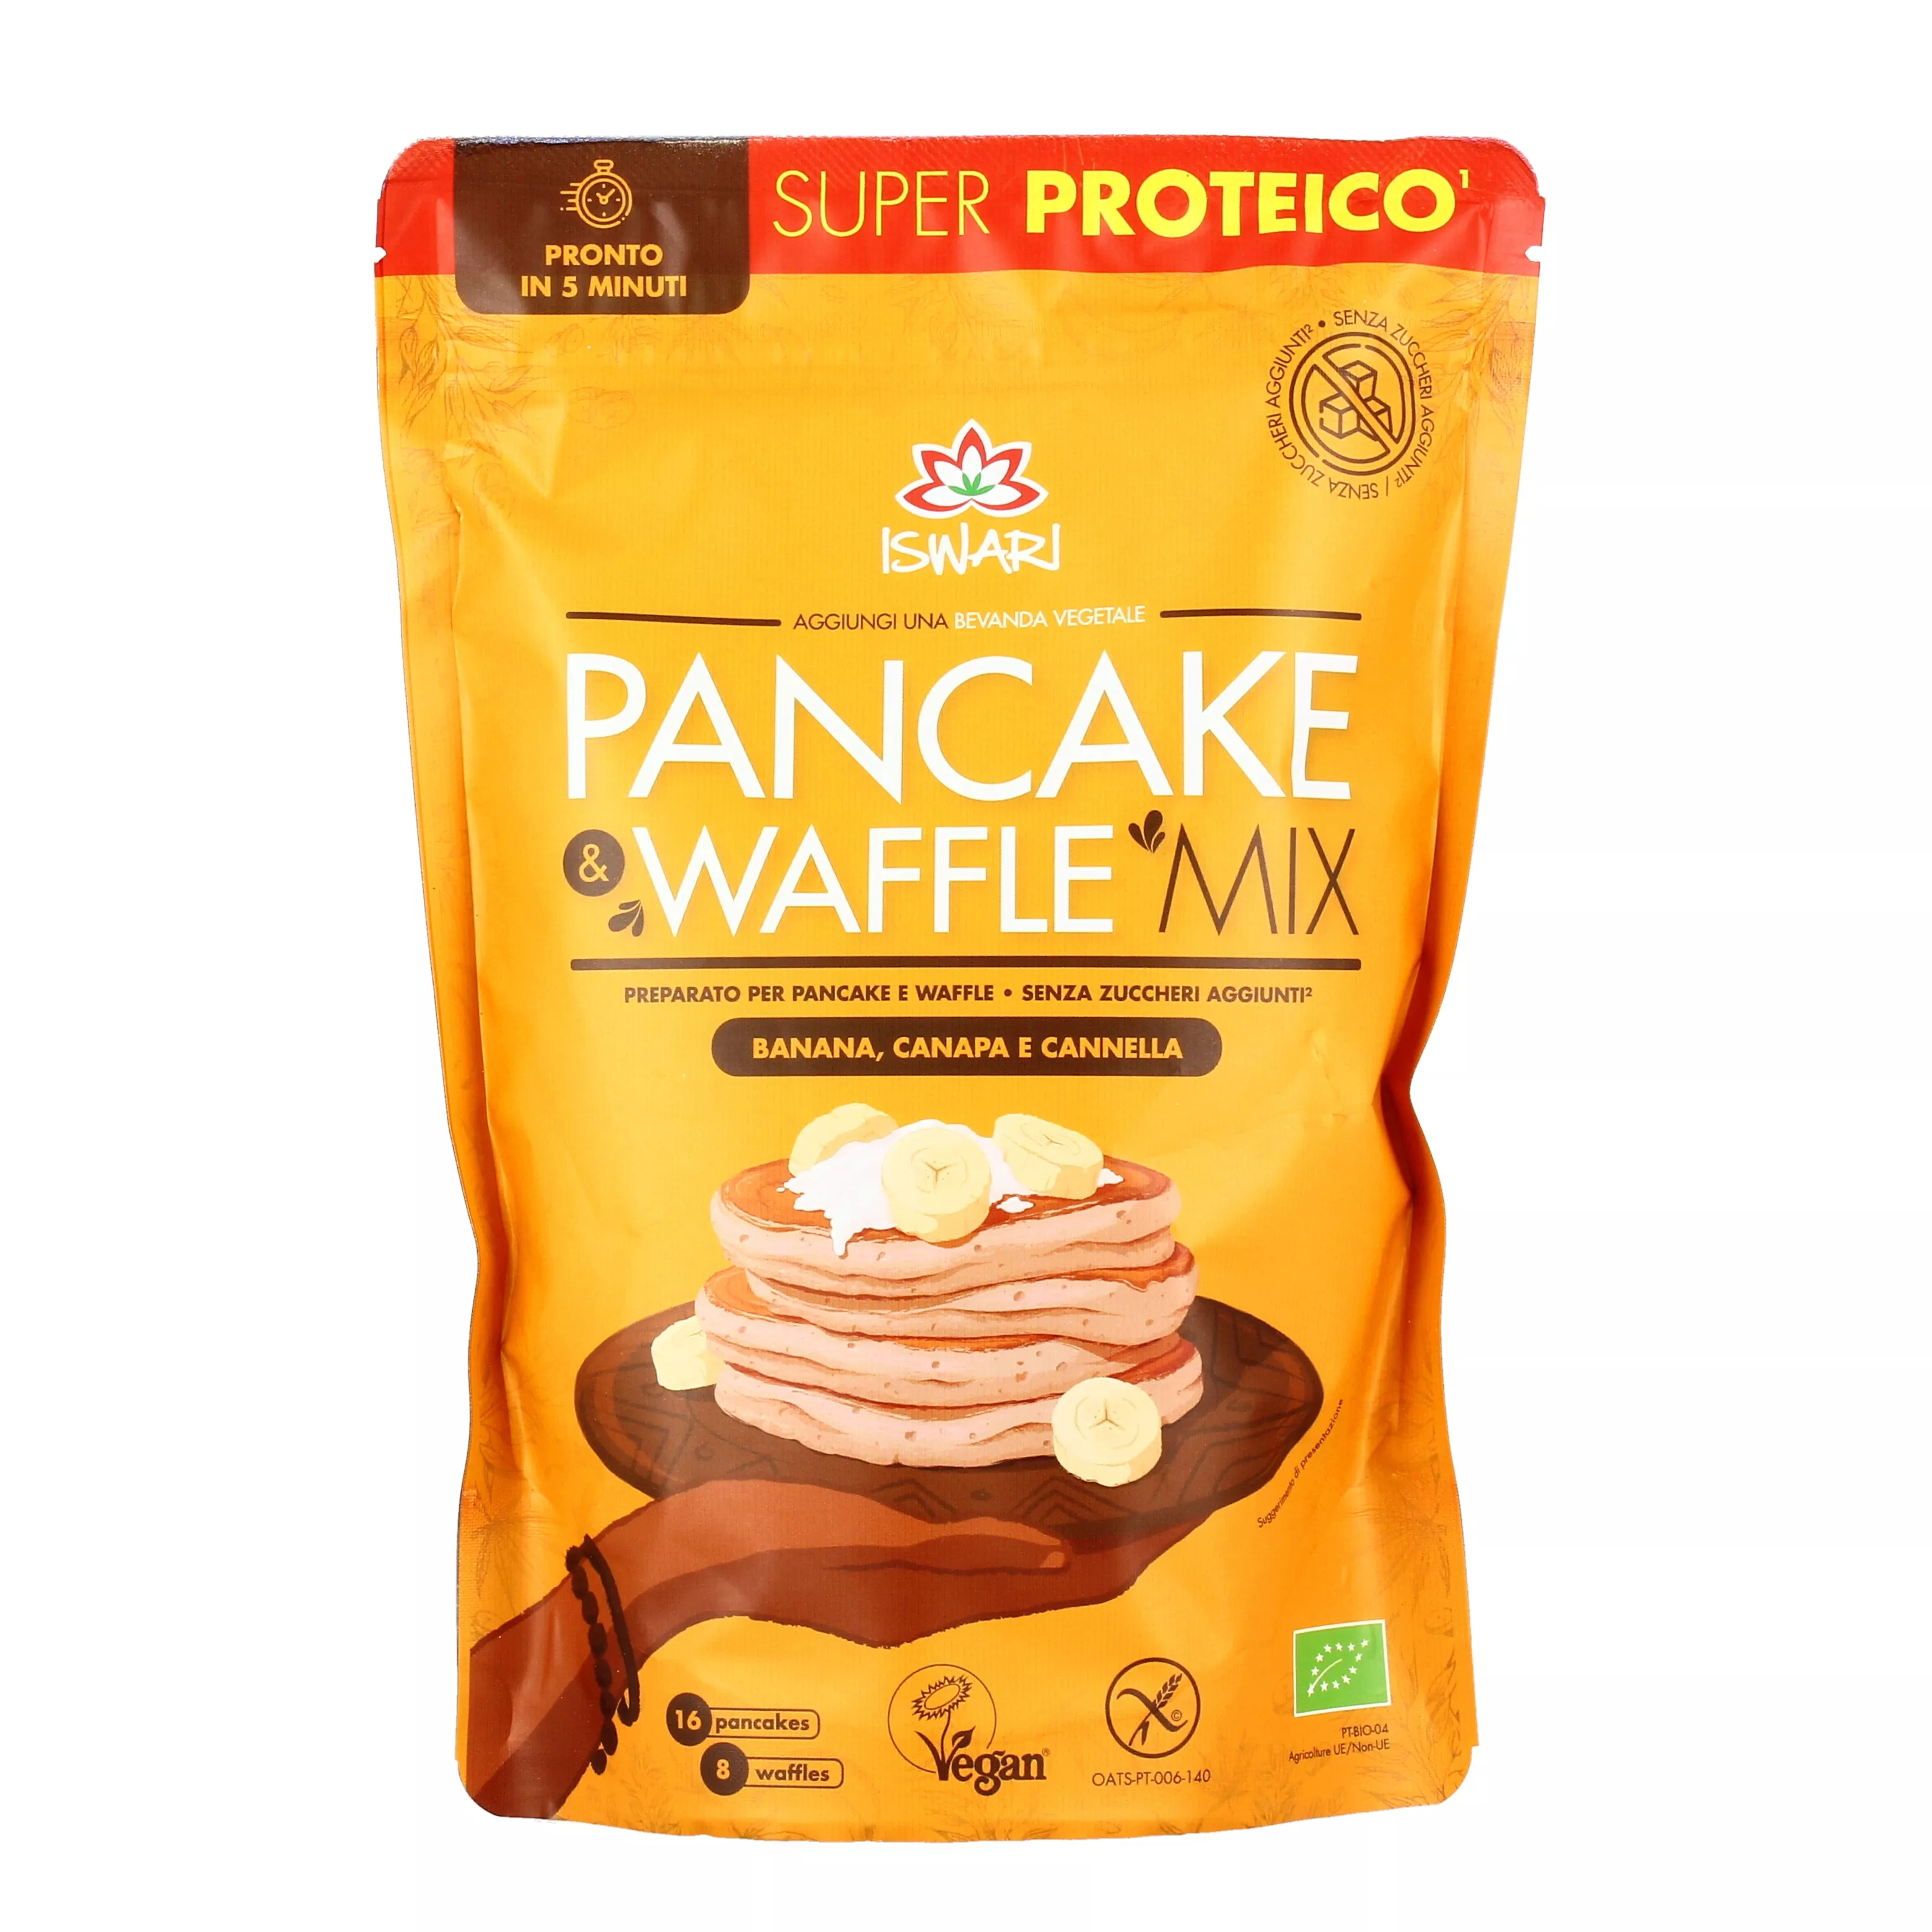 Preparato per waffle e pancake senza glutine BAULE VOLANTE Agricoltura  biologica, Prontuario AIC - NaturaSì